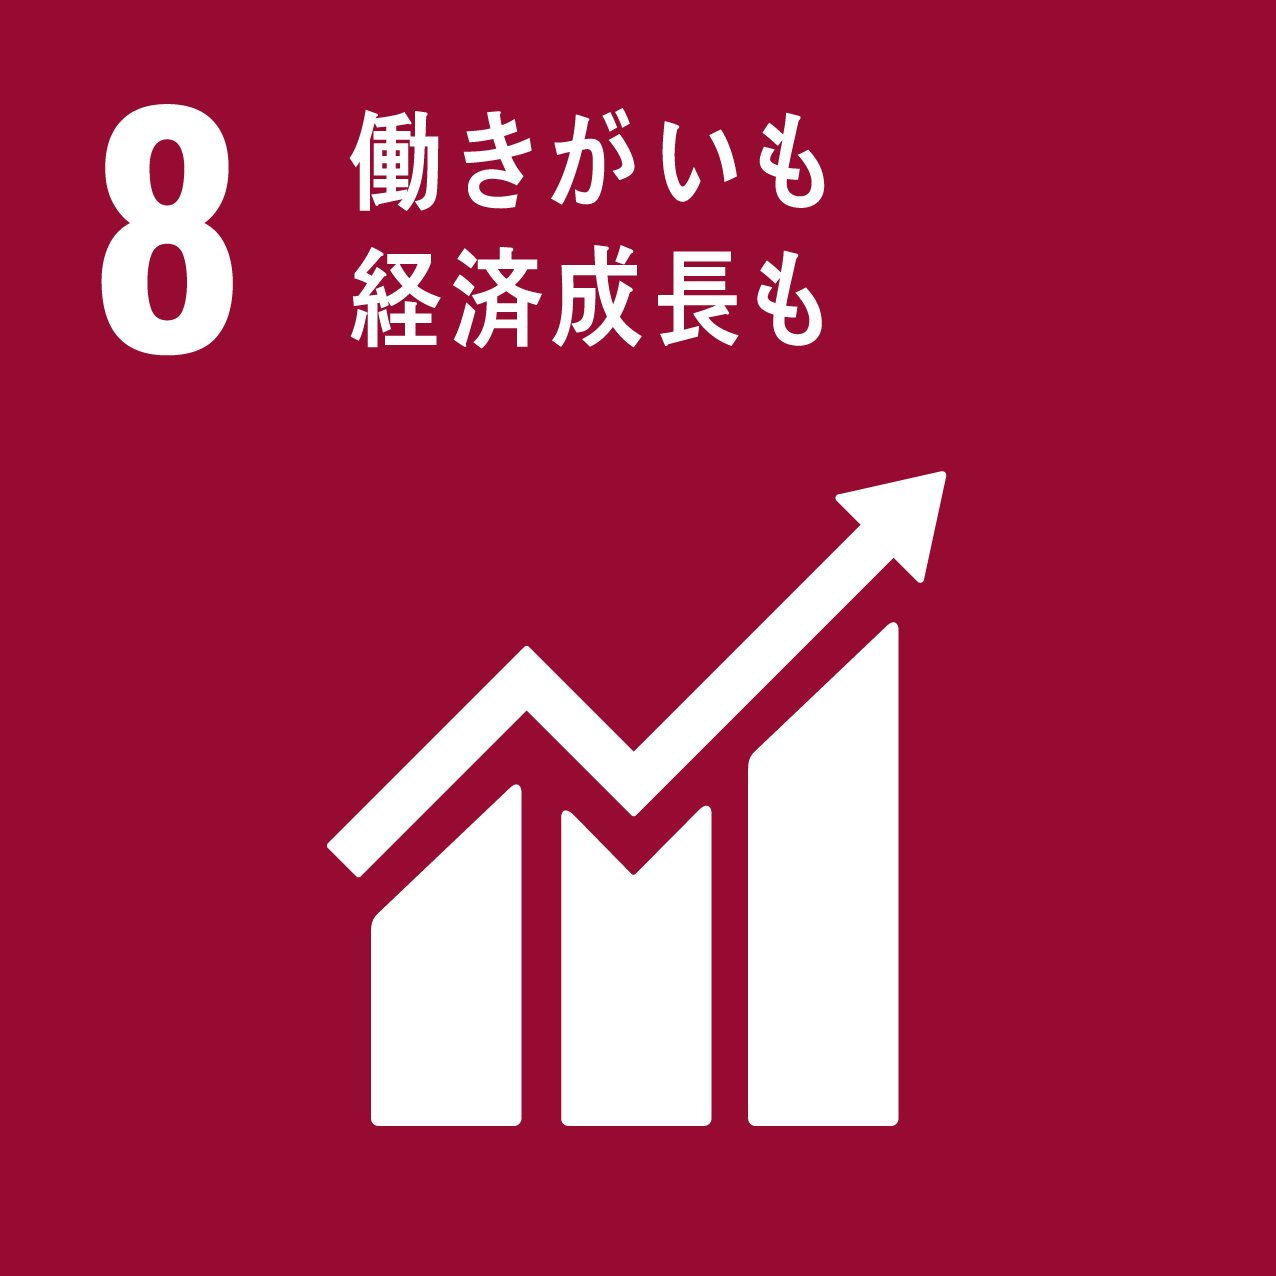 SDGs logo